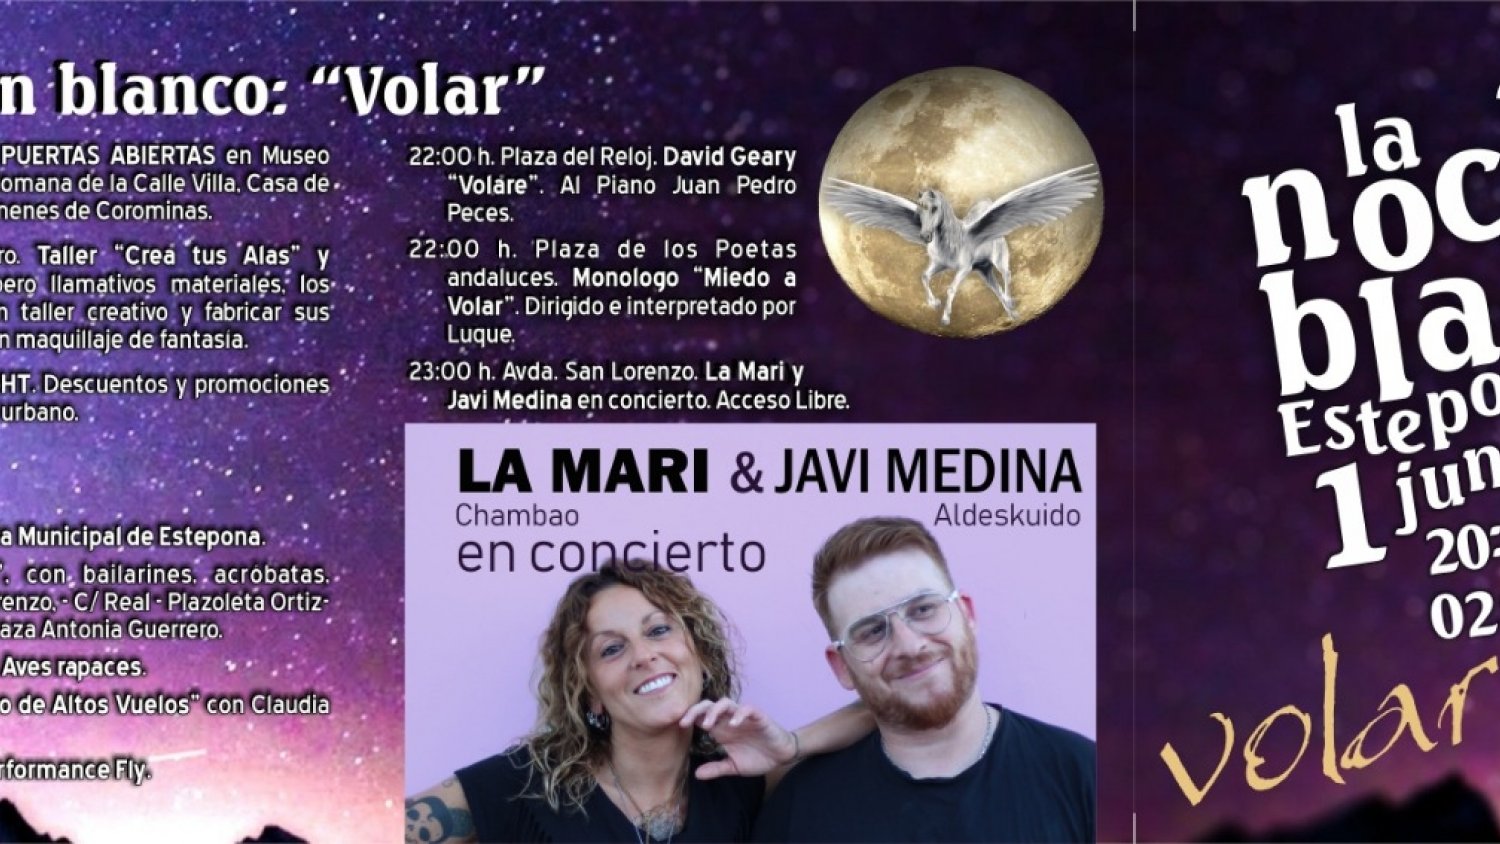 La Noche en Blanco de Estepona trae como protagonistas la II 'Shopping Night' y un concierto de ‘La Mari’ y Javi Medina